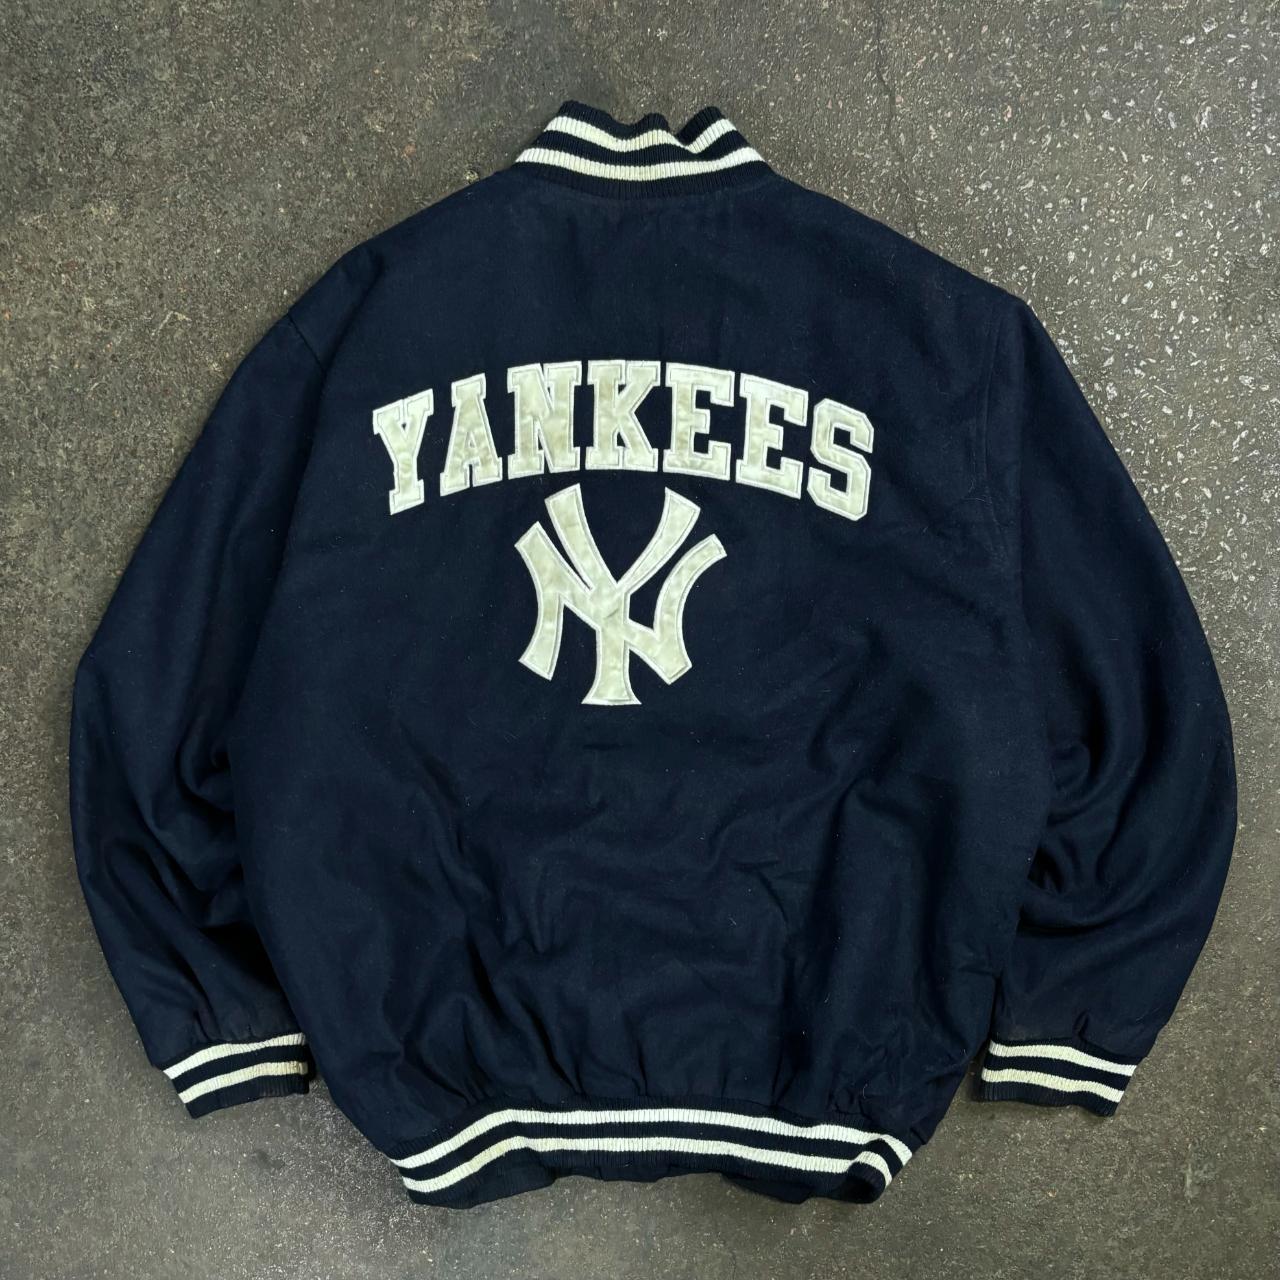 Vintage Yankees varsity jacket 90s New York... - Depop